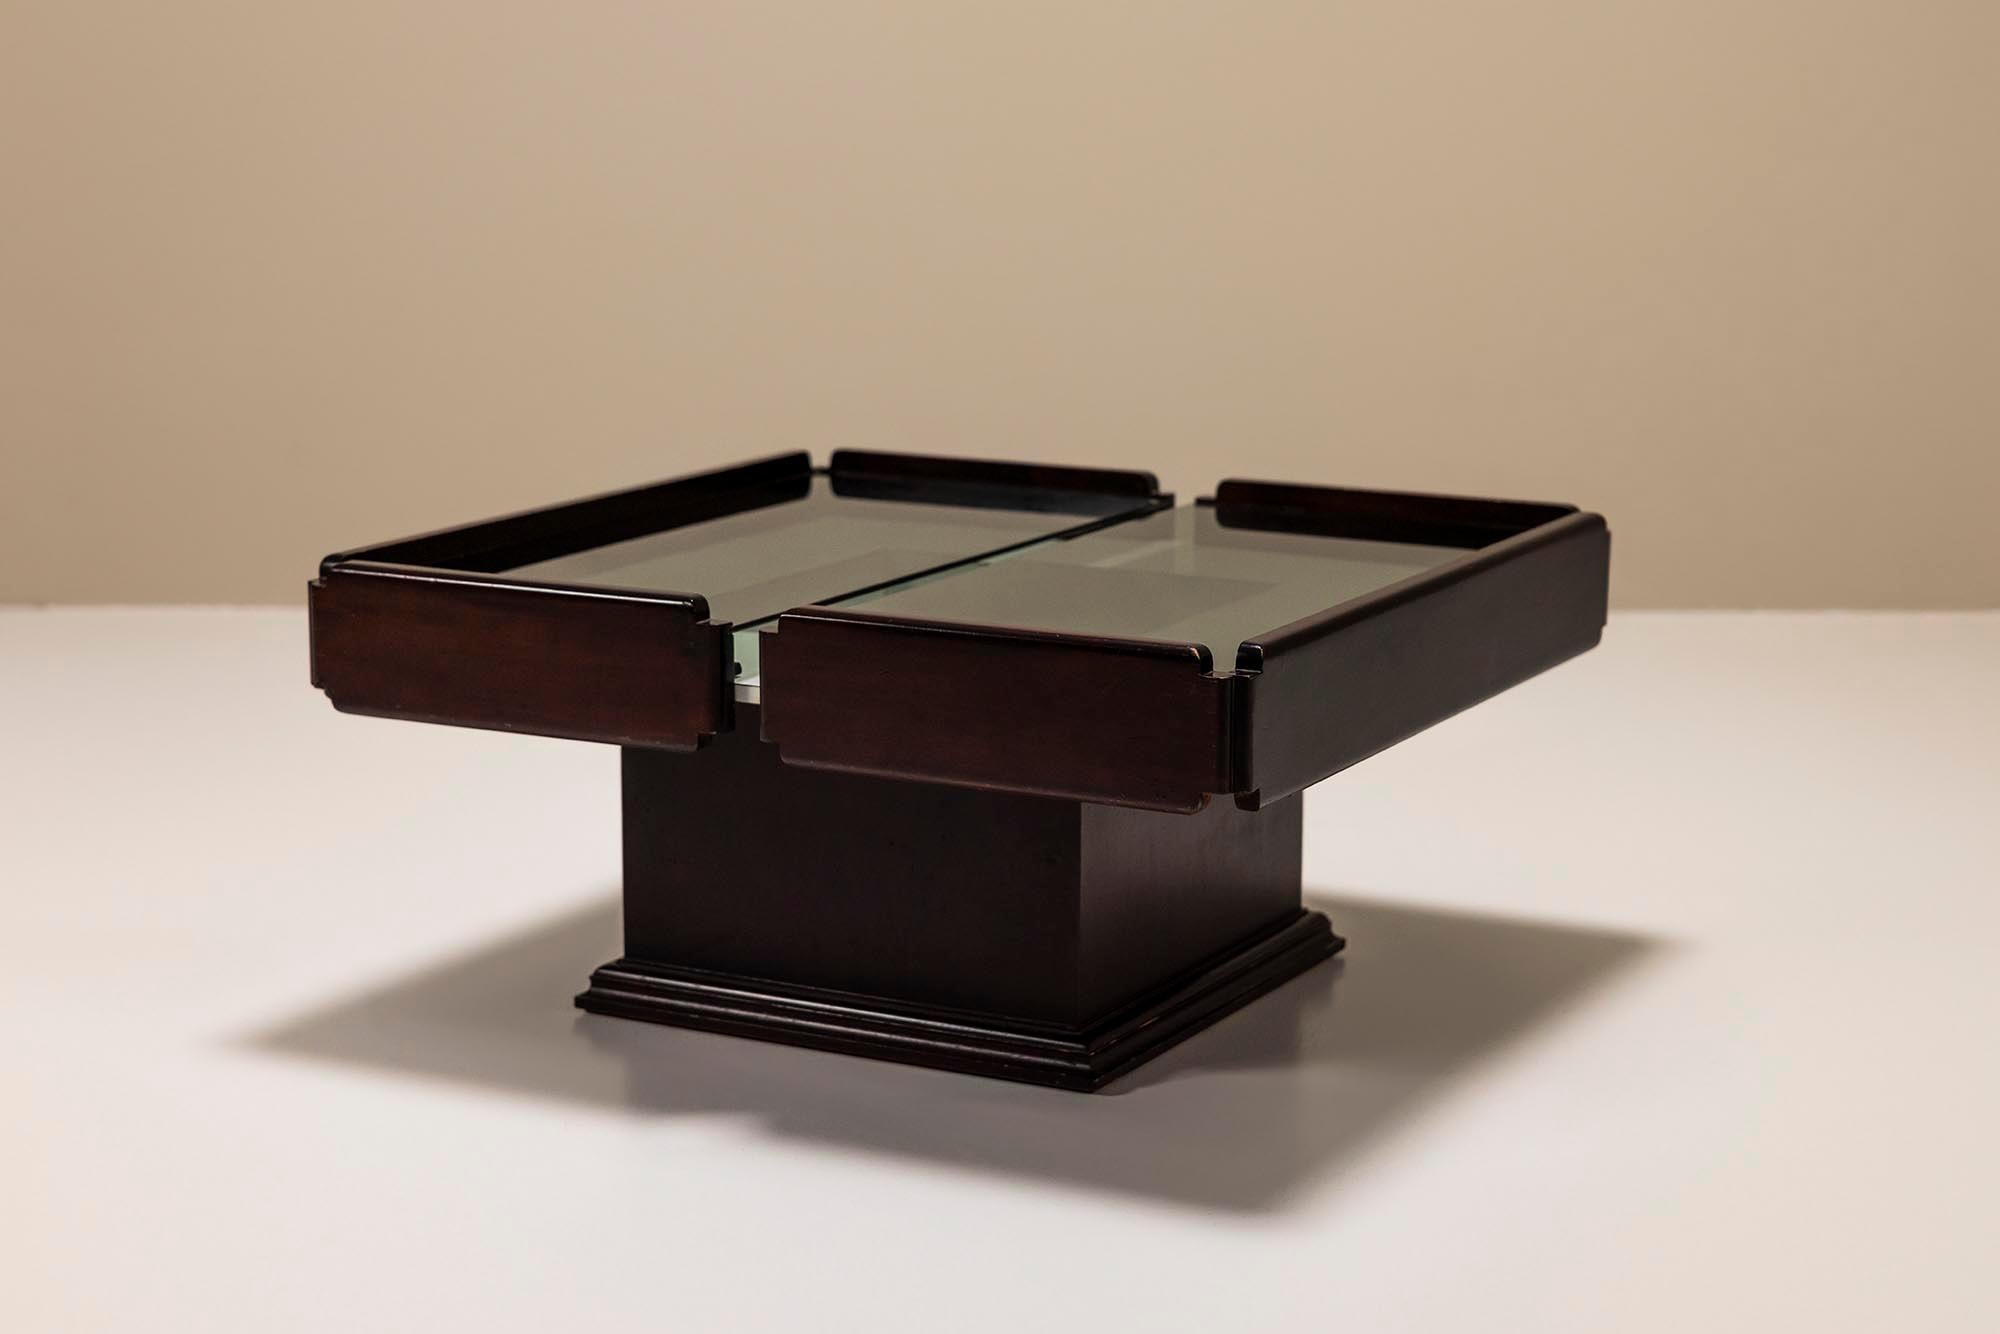 Cette table basse datant des années 60 présente une combinaison agréable de deux styles différents. La base peut être décrite comme carrément classique, presque une sorte de colonne, tandis que les panneaux en bois créent une forme plus moderniste.